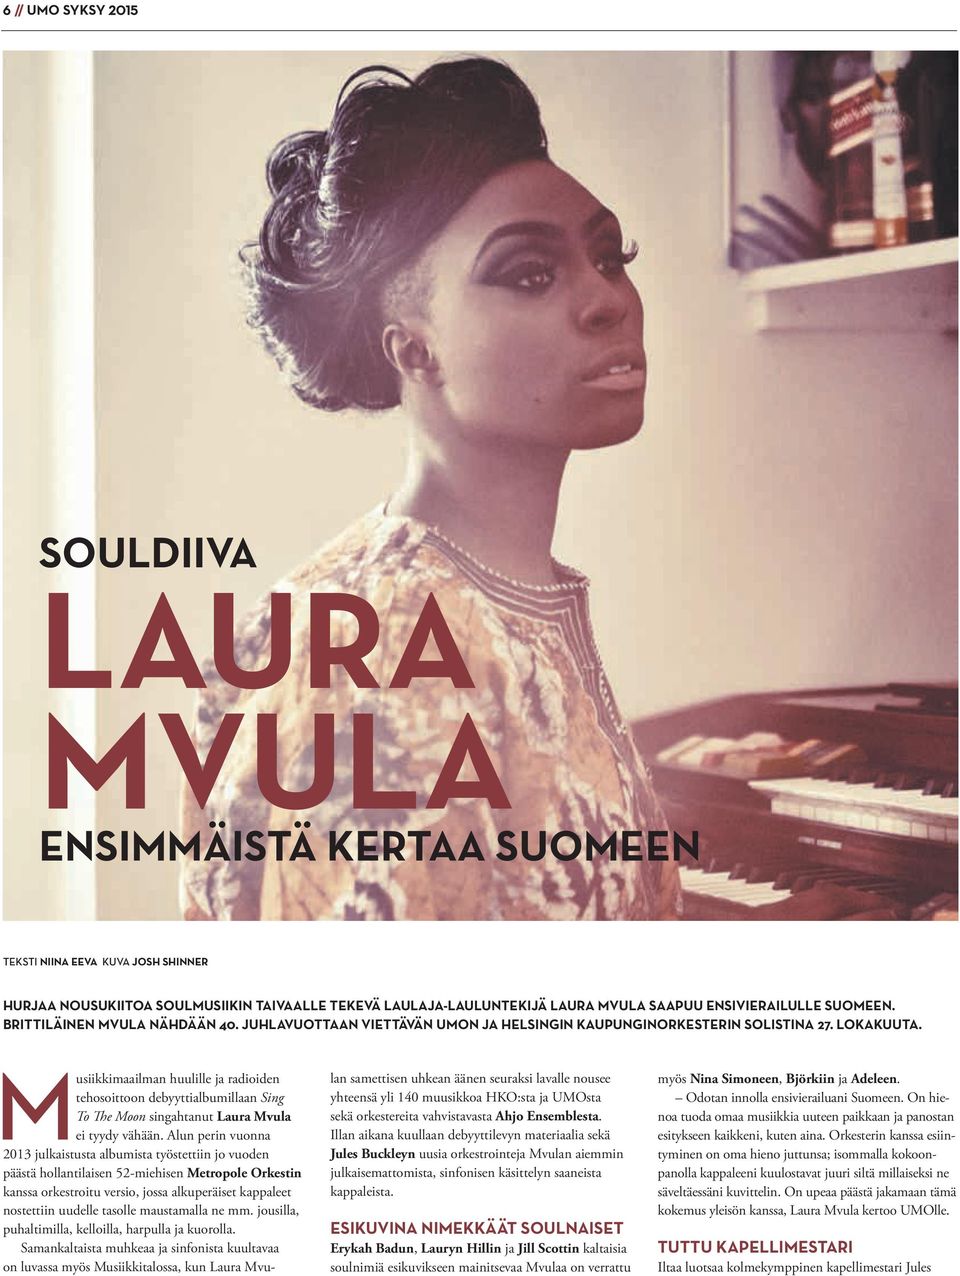 Musiikkimaailman huulille ja radioiden tehosoittoon debyyttialbumillaan Sing To The Moon singahtanut Laura Mvula ei tyydy vähään.